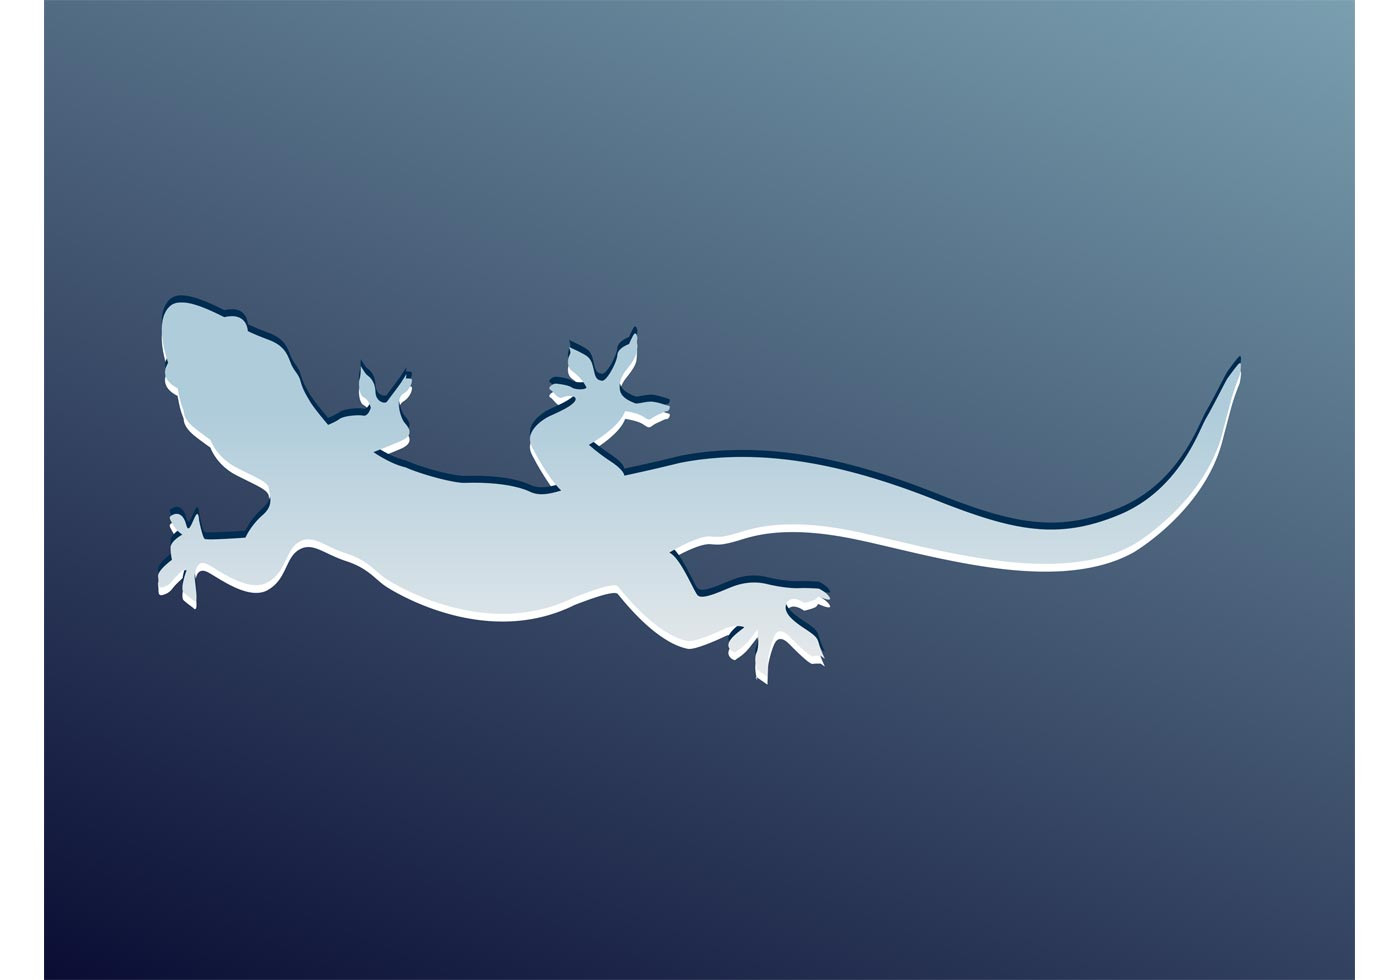 Download Lizard Vector - Download Free Vector Art, Stock Graphics & Images